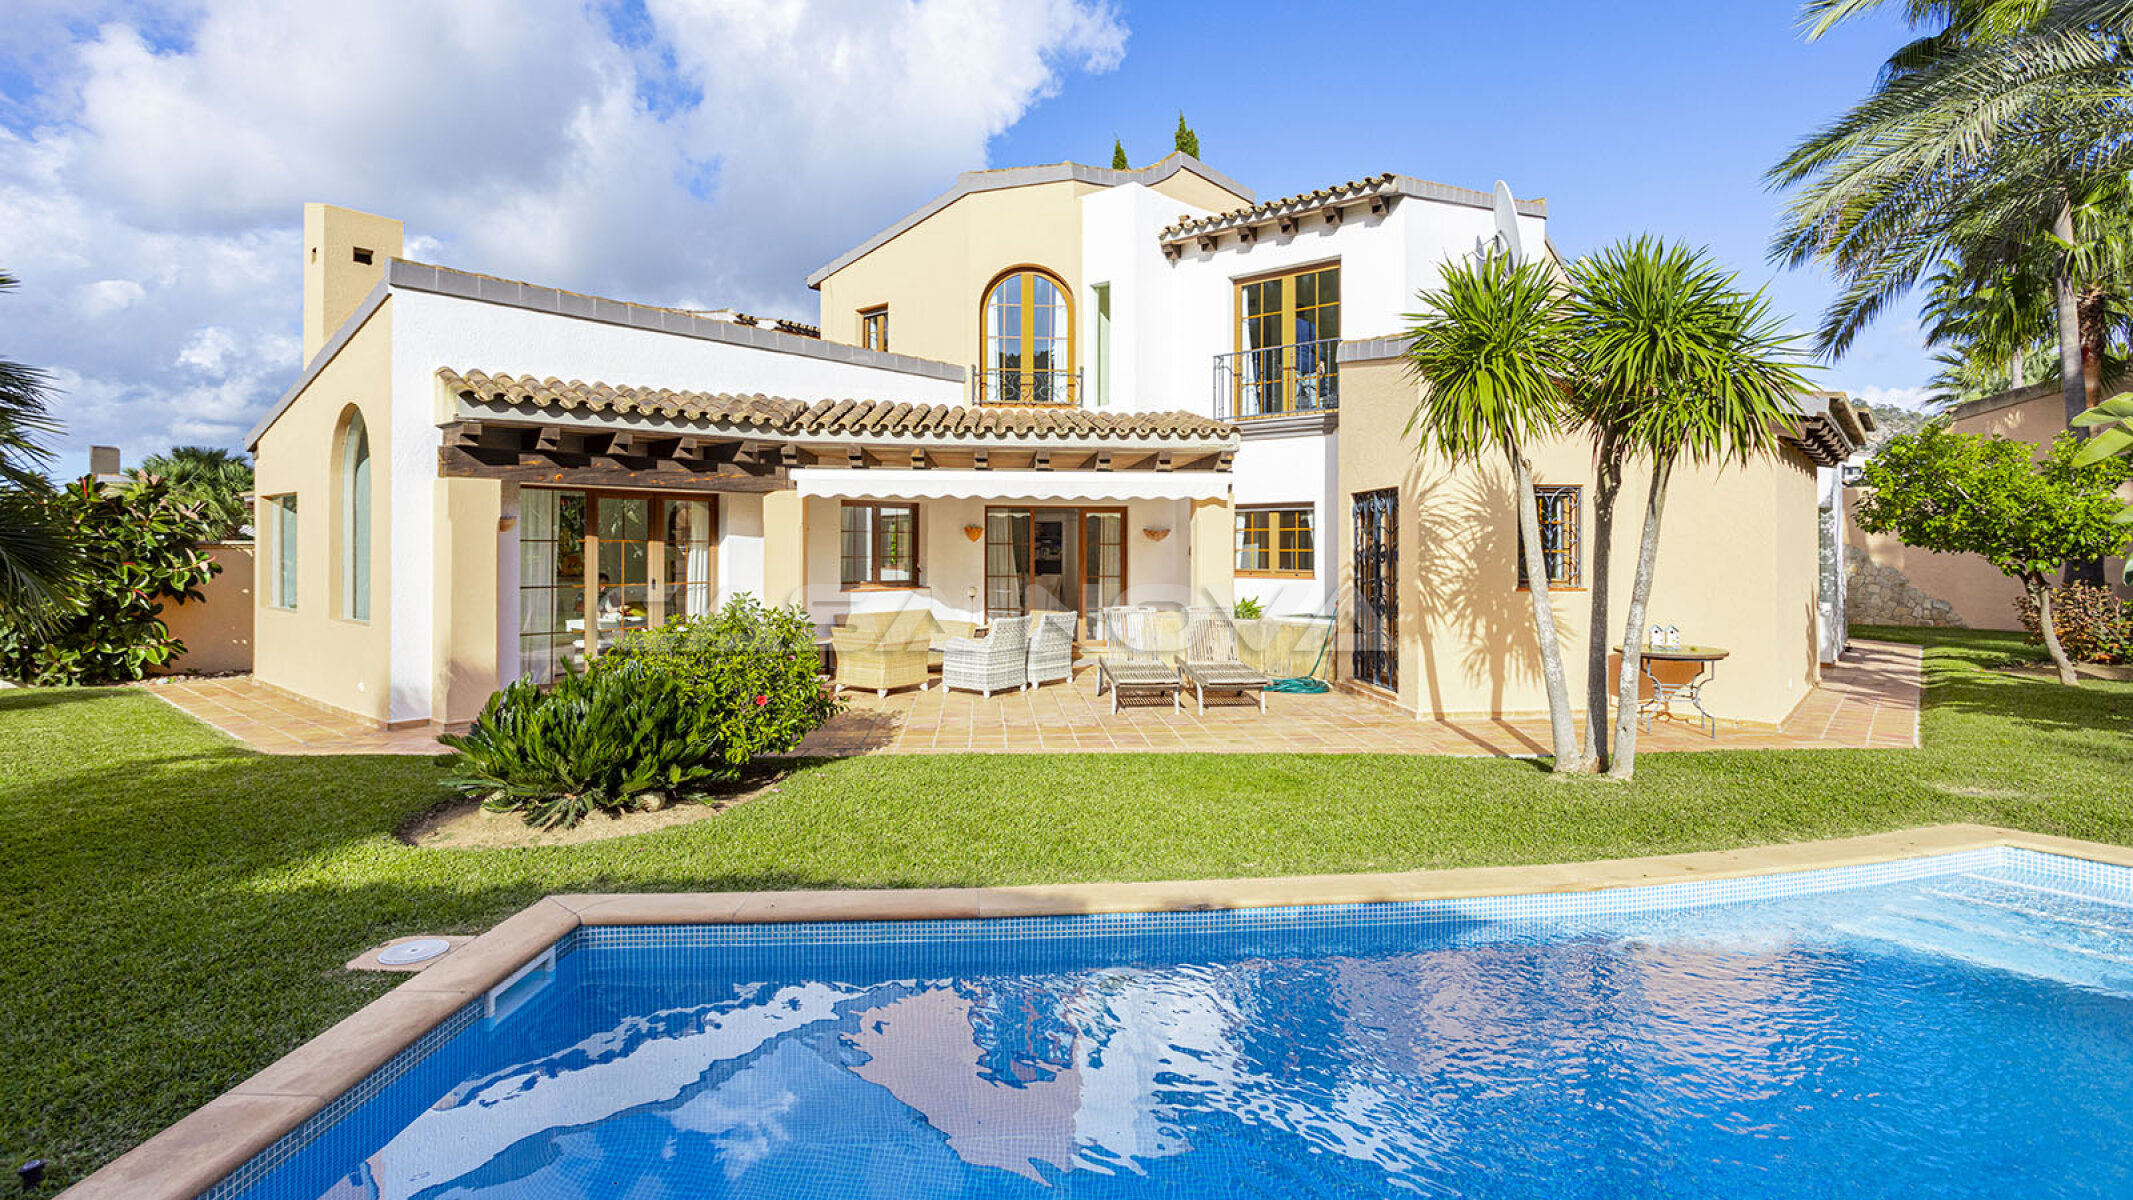 Mallorca villa with swimming pool in exclusive complex 